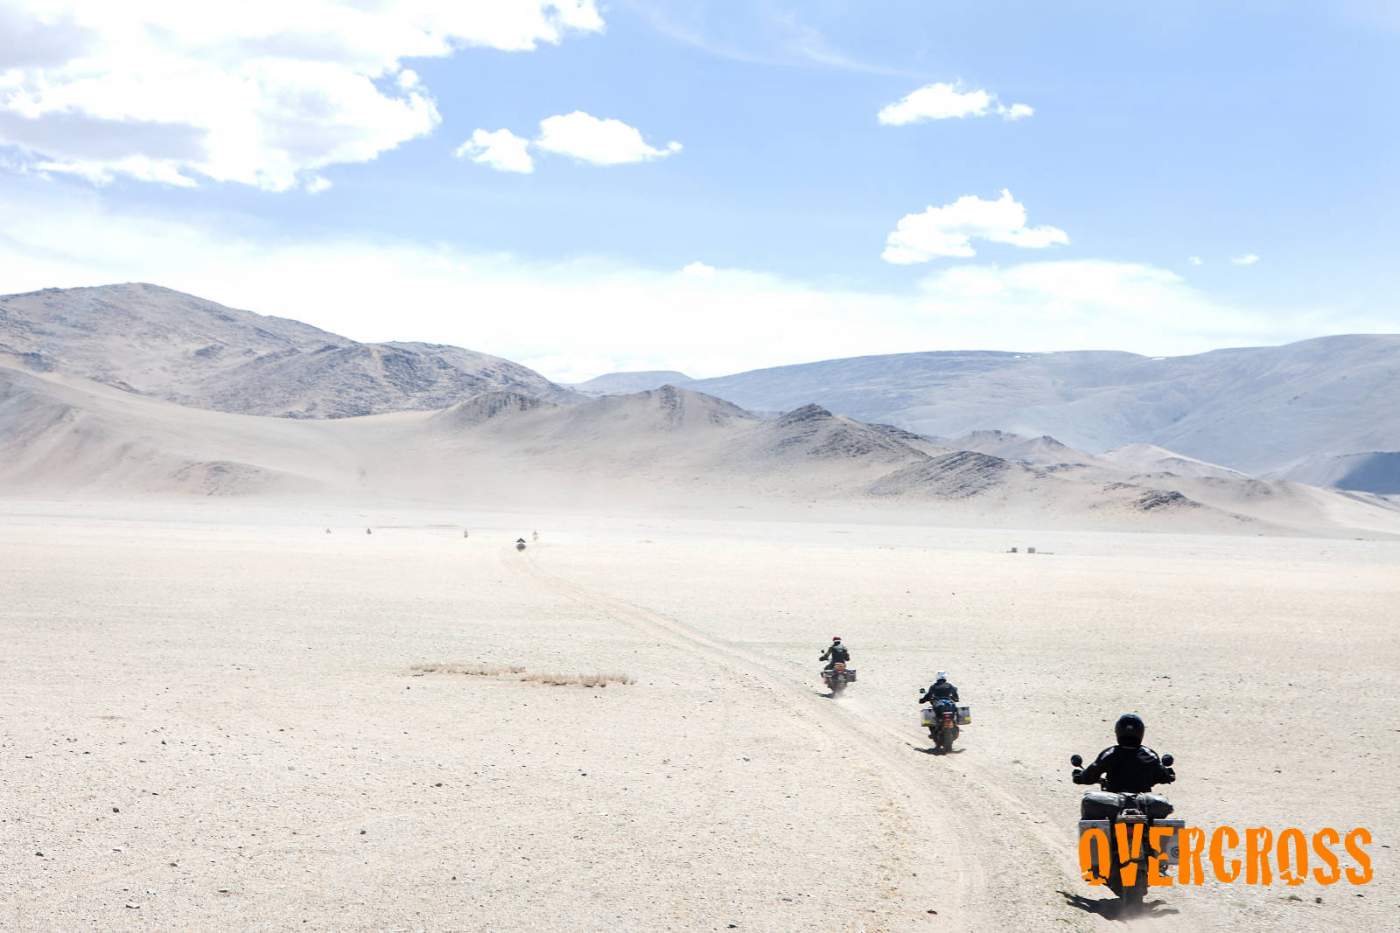 Auf der Transkontinental Motorradexpedition durch Osteuropa in die Mongolei geht es mit Reiseenduros durch die Weiten der Wüste Gobi.